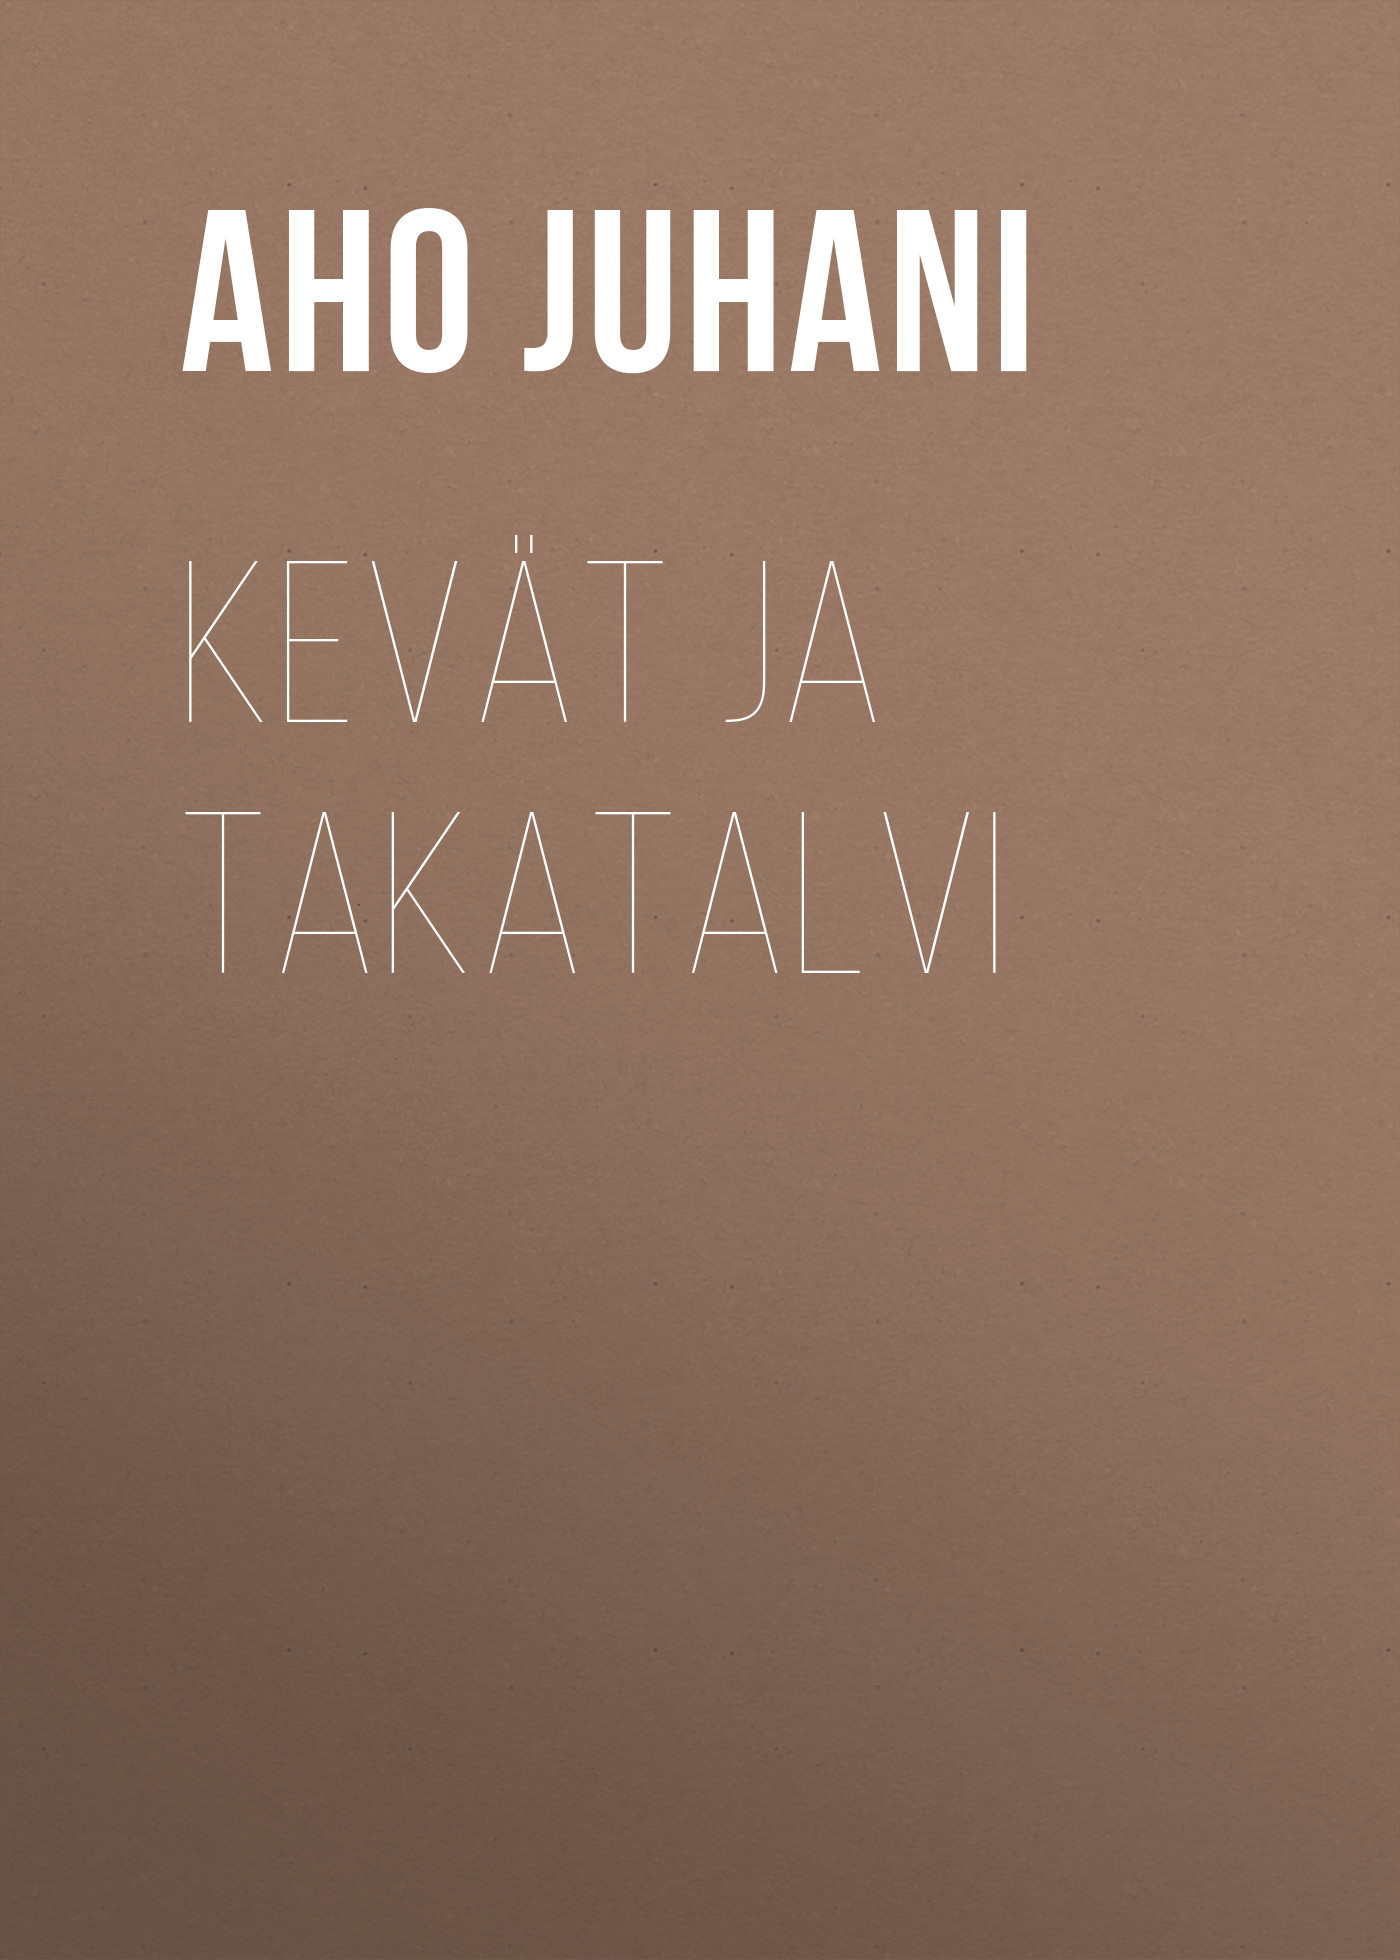 Книга Kevät ja takatalvi из серии , созданная Juhani Aho, может относится к жанру Зарубежная фантастика, Зарубежная старинная литература, Зарубежная классика. Стоимость электронной книги Kevät ja takatalvi с идентификатором 36367262 составляет 0 руб.